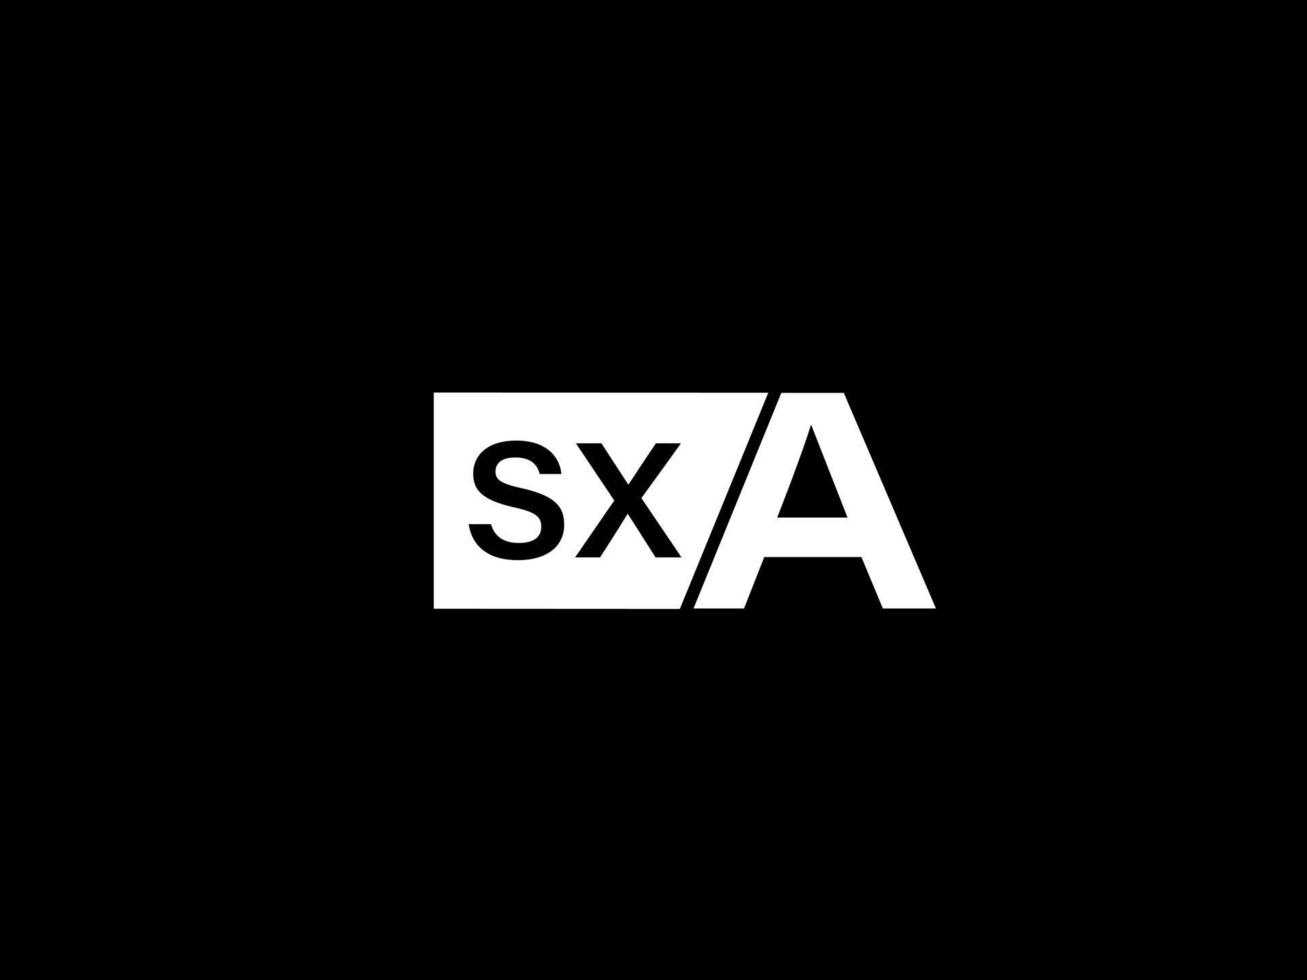 sxa-Logo und Grafikdesign Vektorgrafiken, Symbole isoliert auf schwarzem Hintergrund vektor